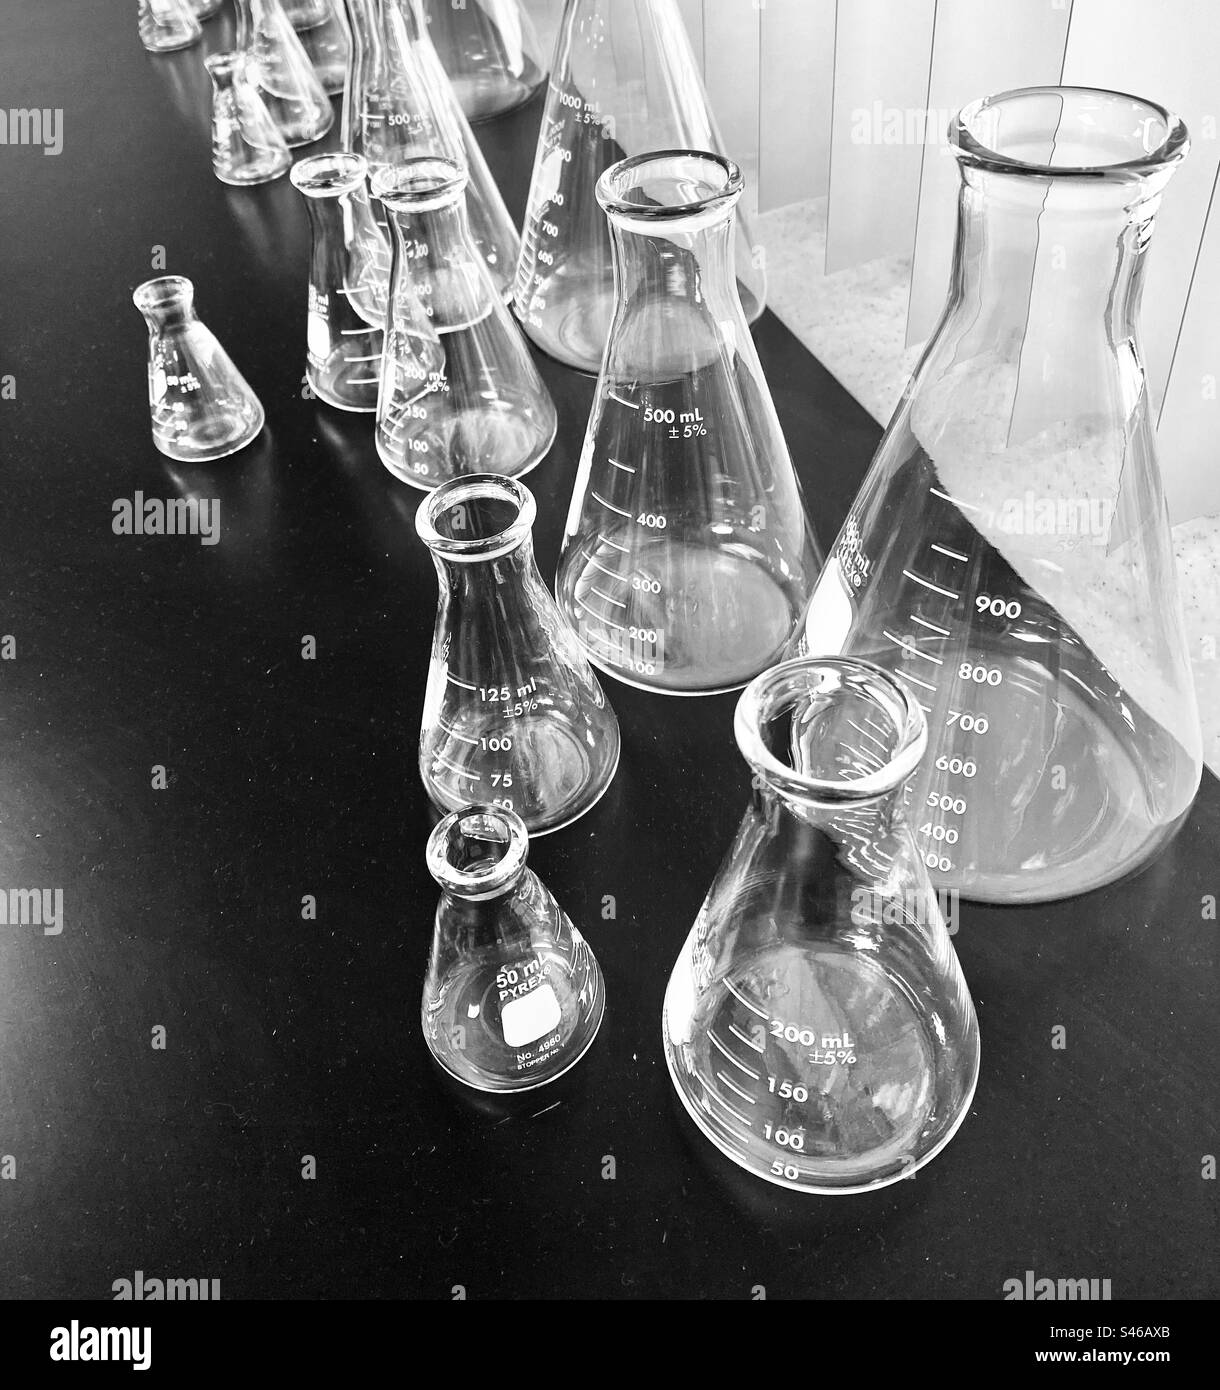 Wissenschaftsbecher in einem Wissenschaftsunterrichtsraum zur Messung. Stockfoto